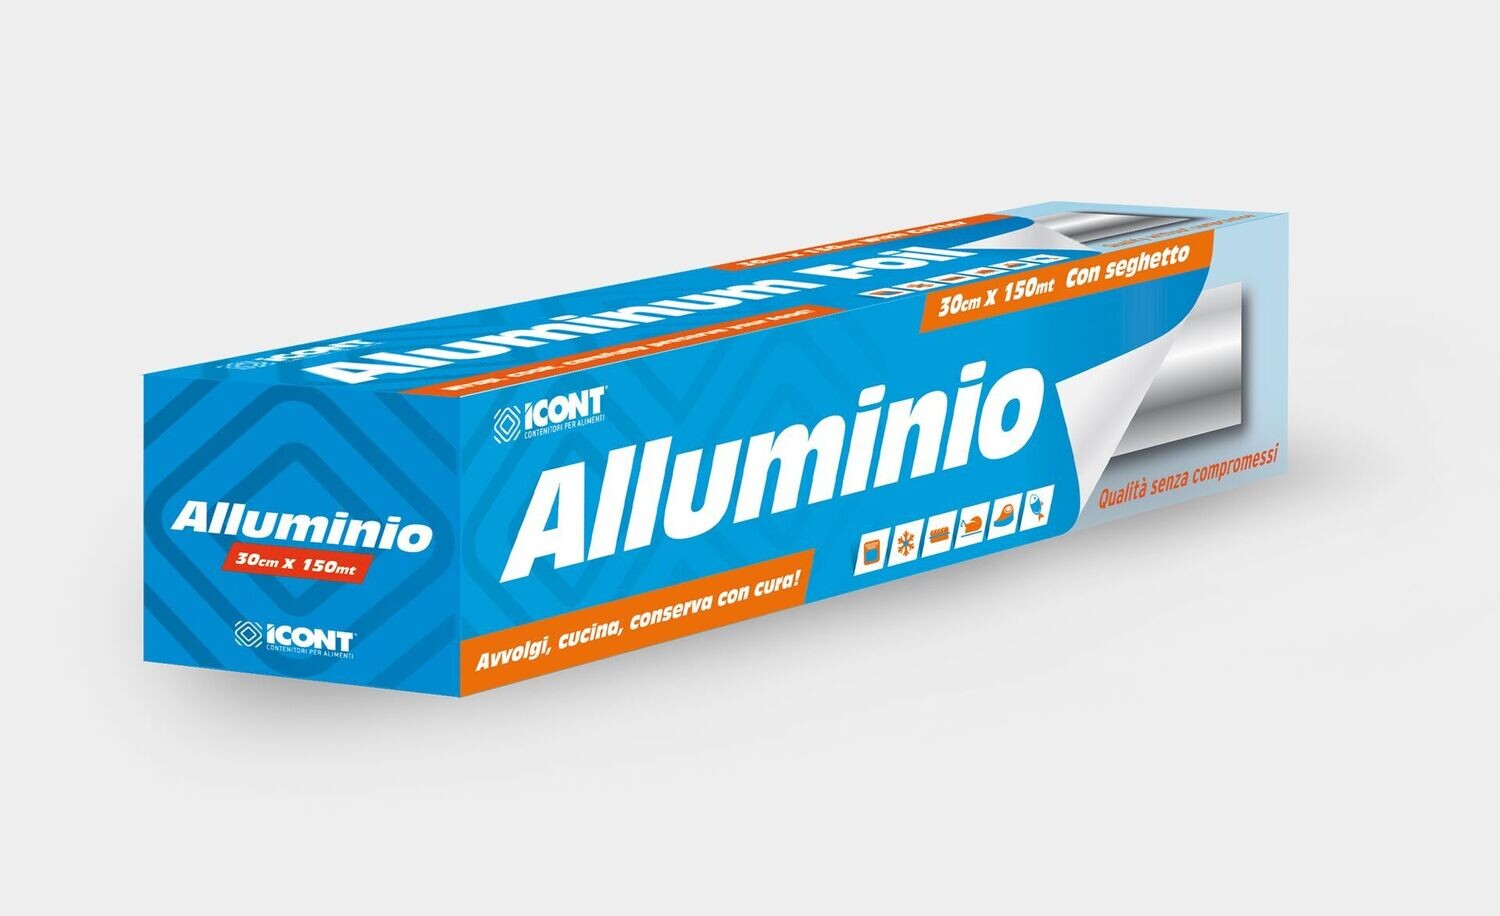 Pellicola alluminio roll, Dimenisioni: Pellicola alluminio roll mt 150 - mm 300 x 150 mt